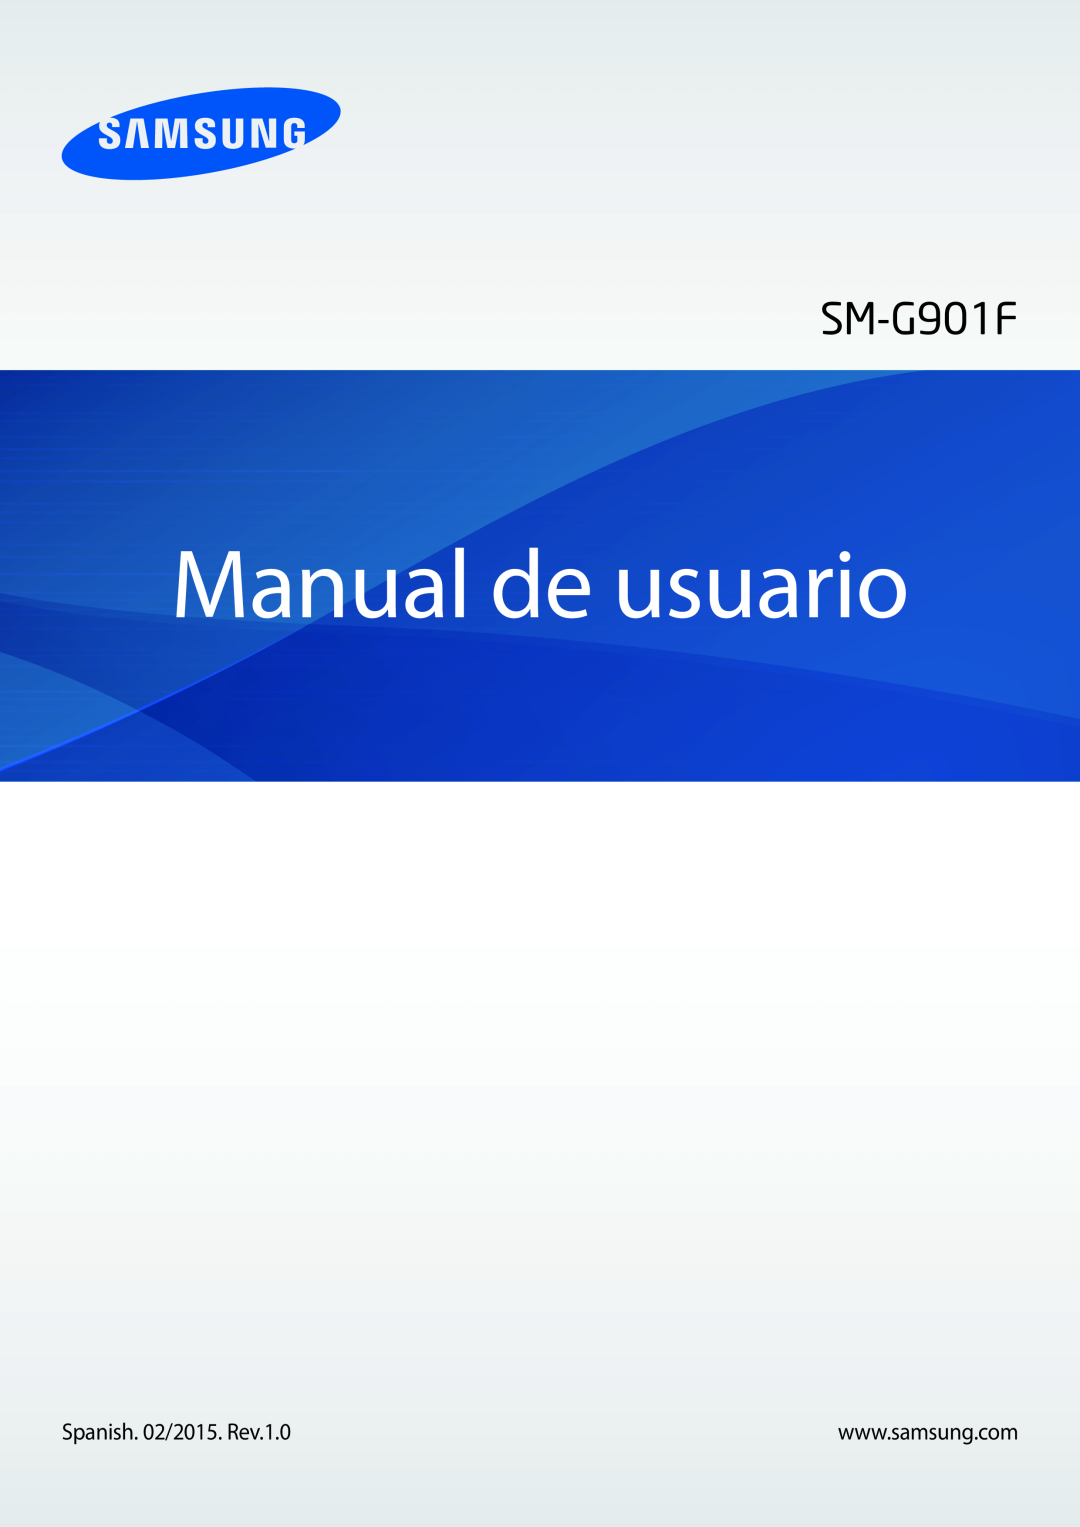 Samsung SM-G901FZKADBT, SM-G901FZBADTM, SM-G901FZDADTM, SM-G901FZKABOG, SM-G901FZDAATL manual Manual de usuario 